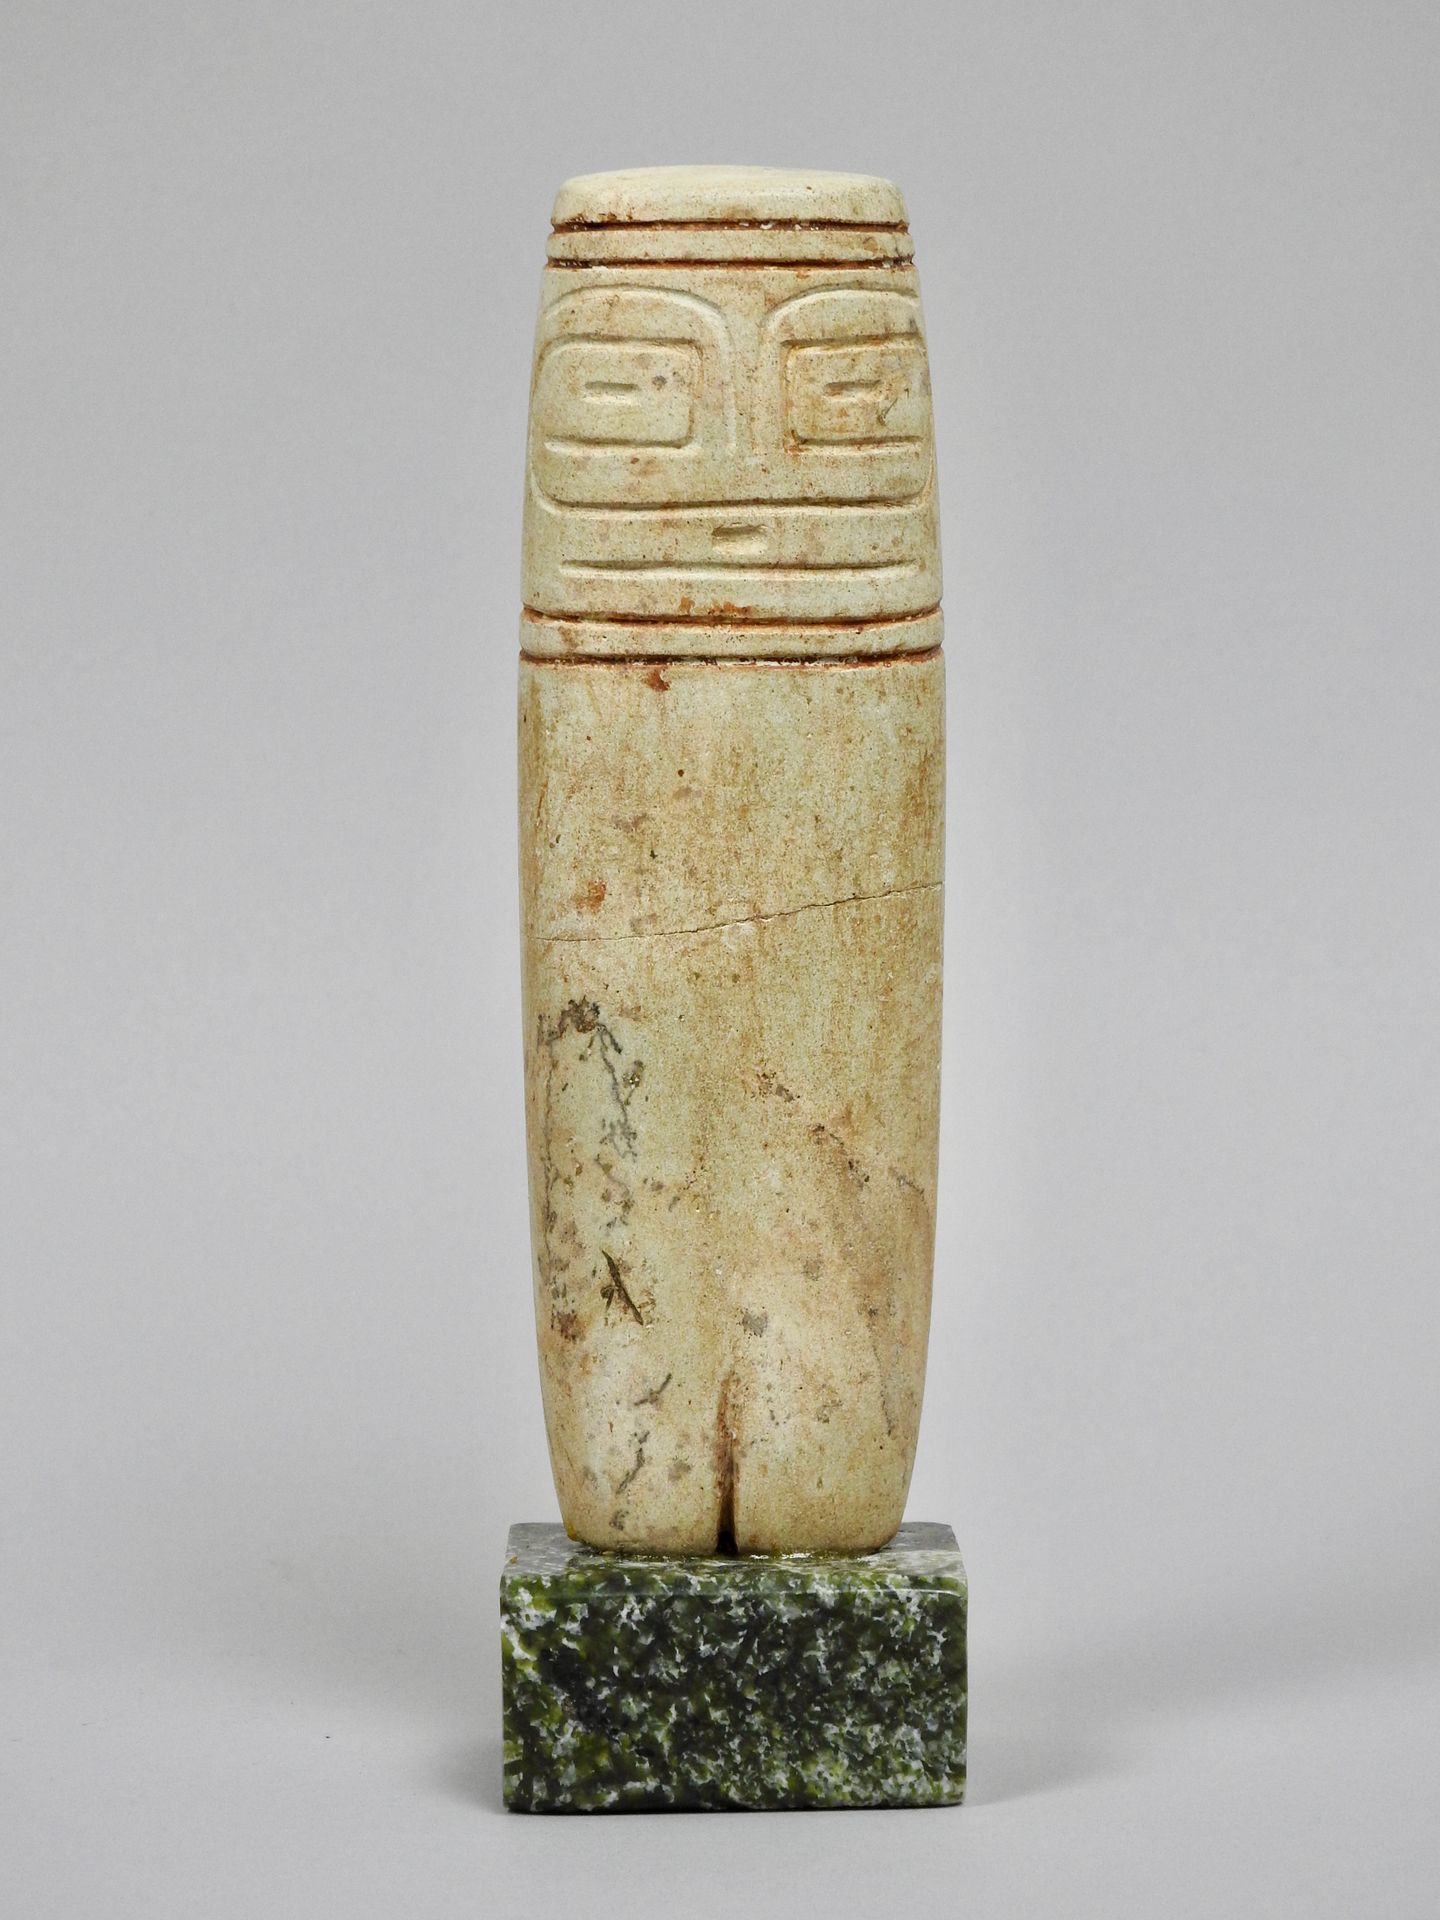 Null 巴尔马文化

斧头偶像母神

刻有示意图线条的石雕，高16.5厘米

断裂和胶合